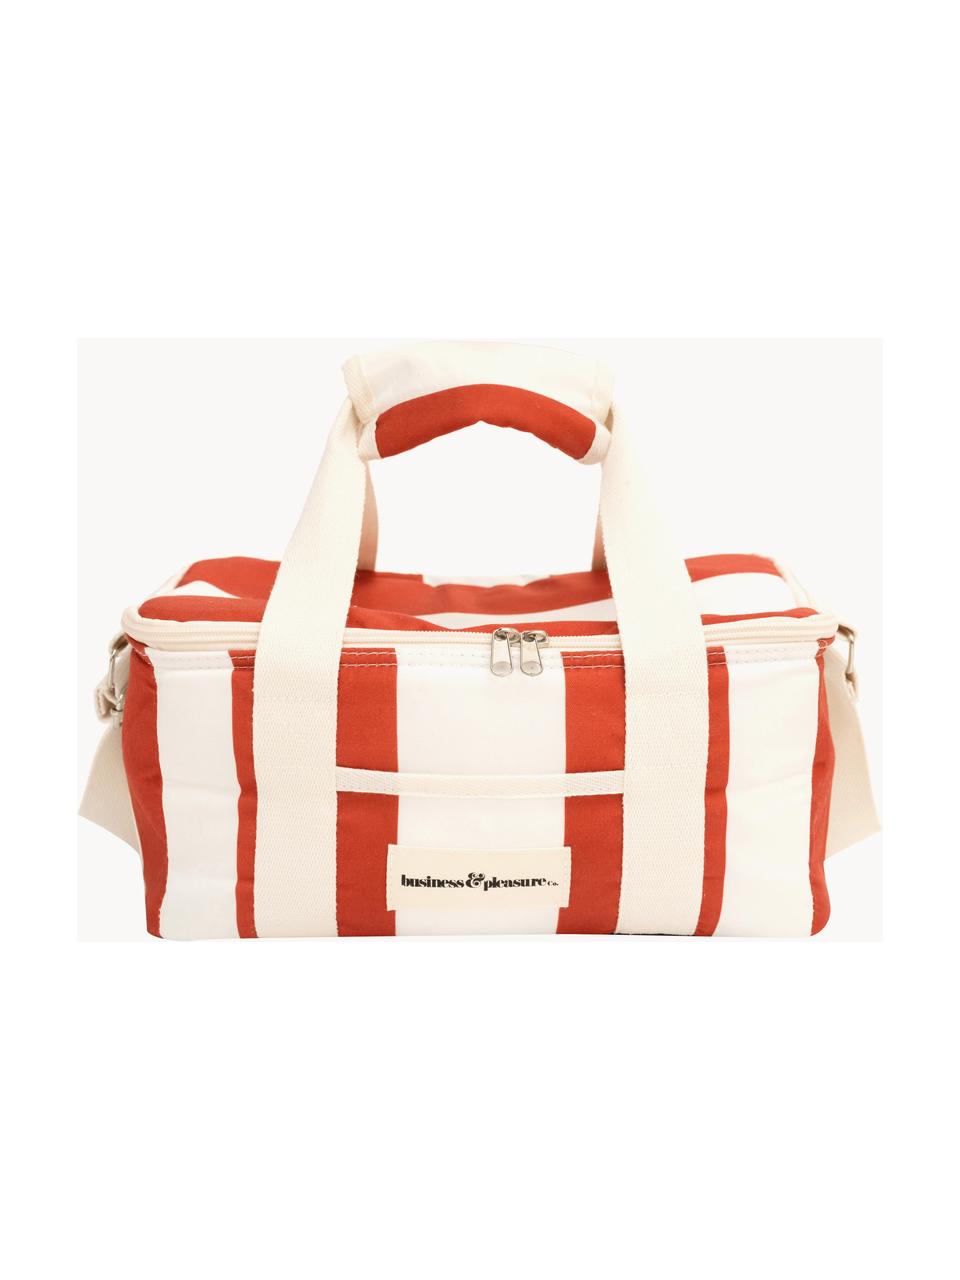 Chladiaca taška Holiday, 50 % bavlna, 25 % polyester, 25 % PVC, Hrdzavočervená, biela, Š 25 x V 20 cm